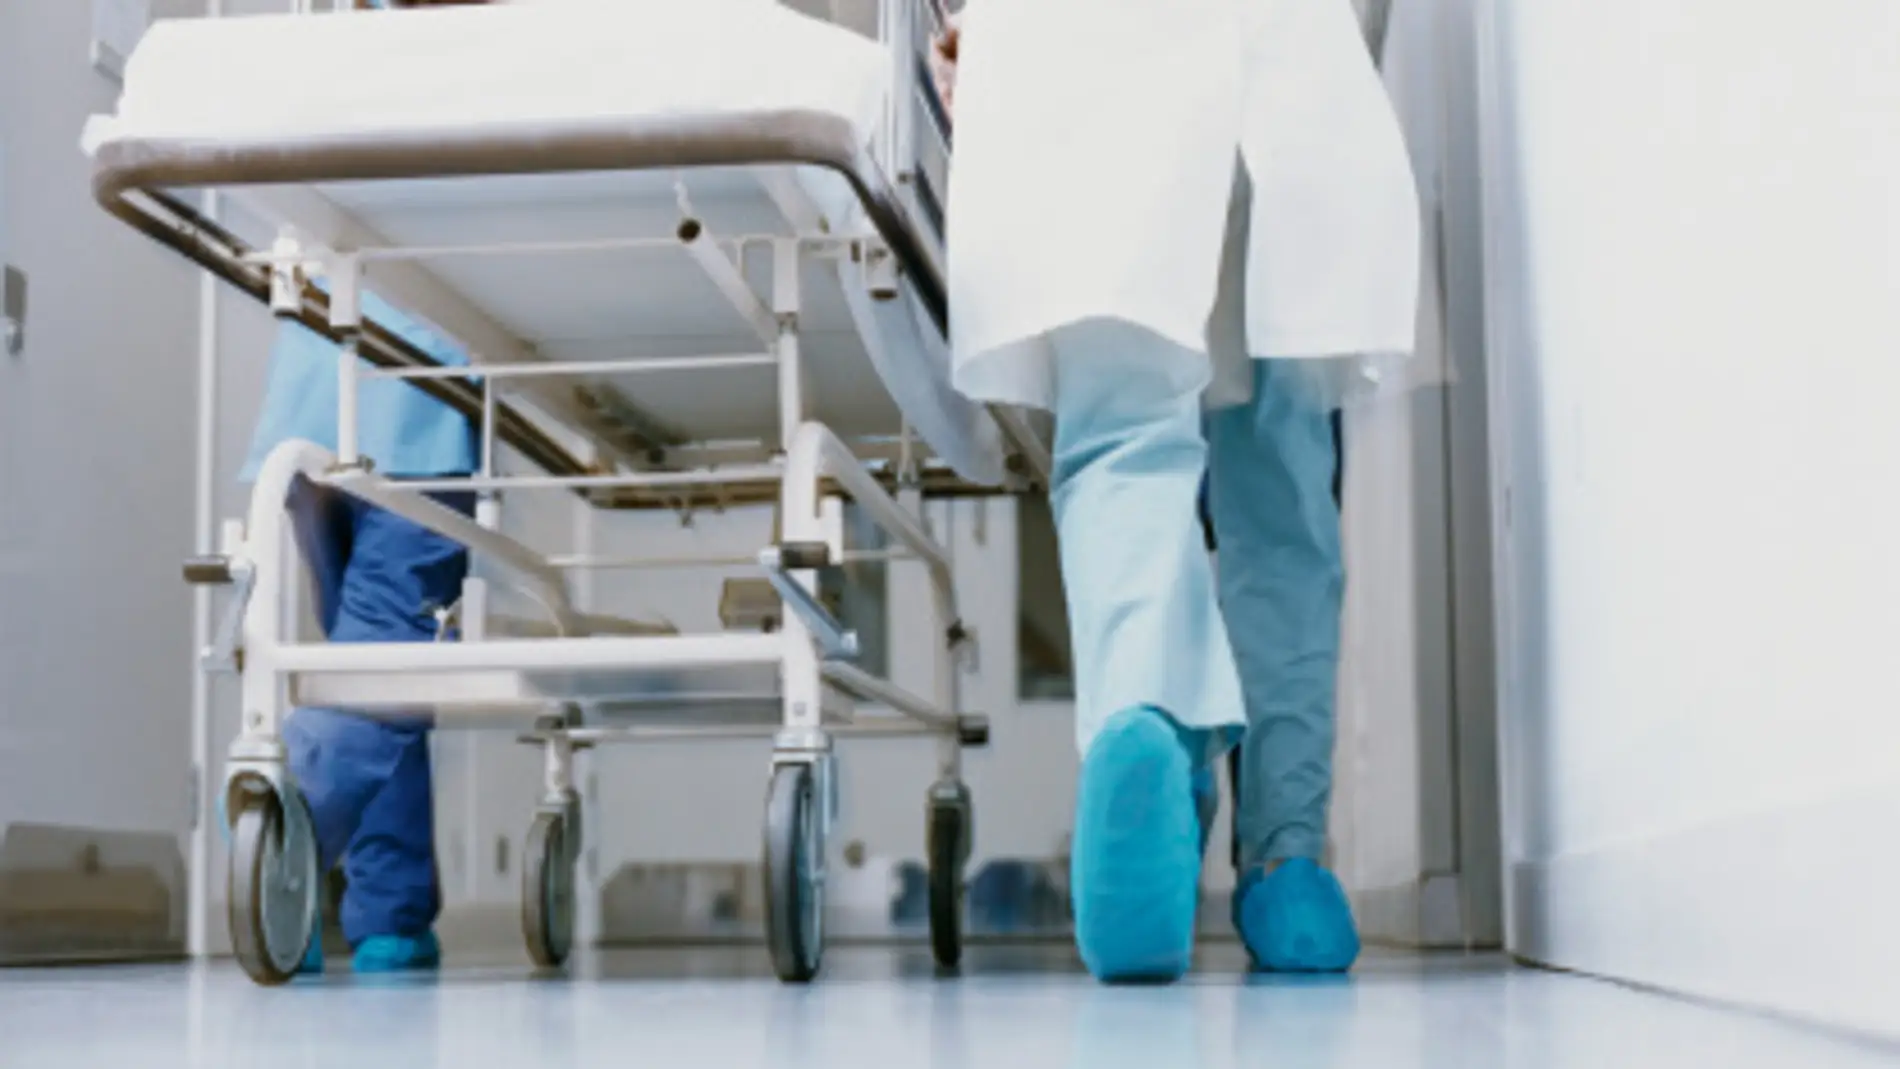 Un médico lleva una camilla en un hospital